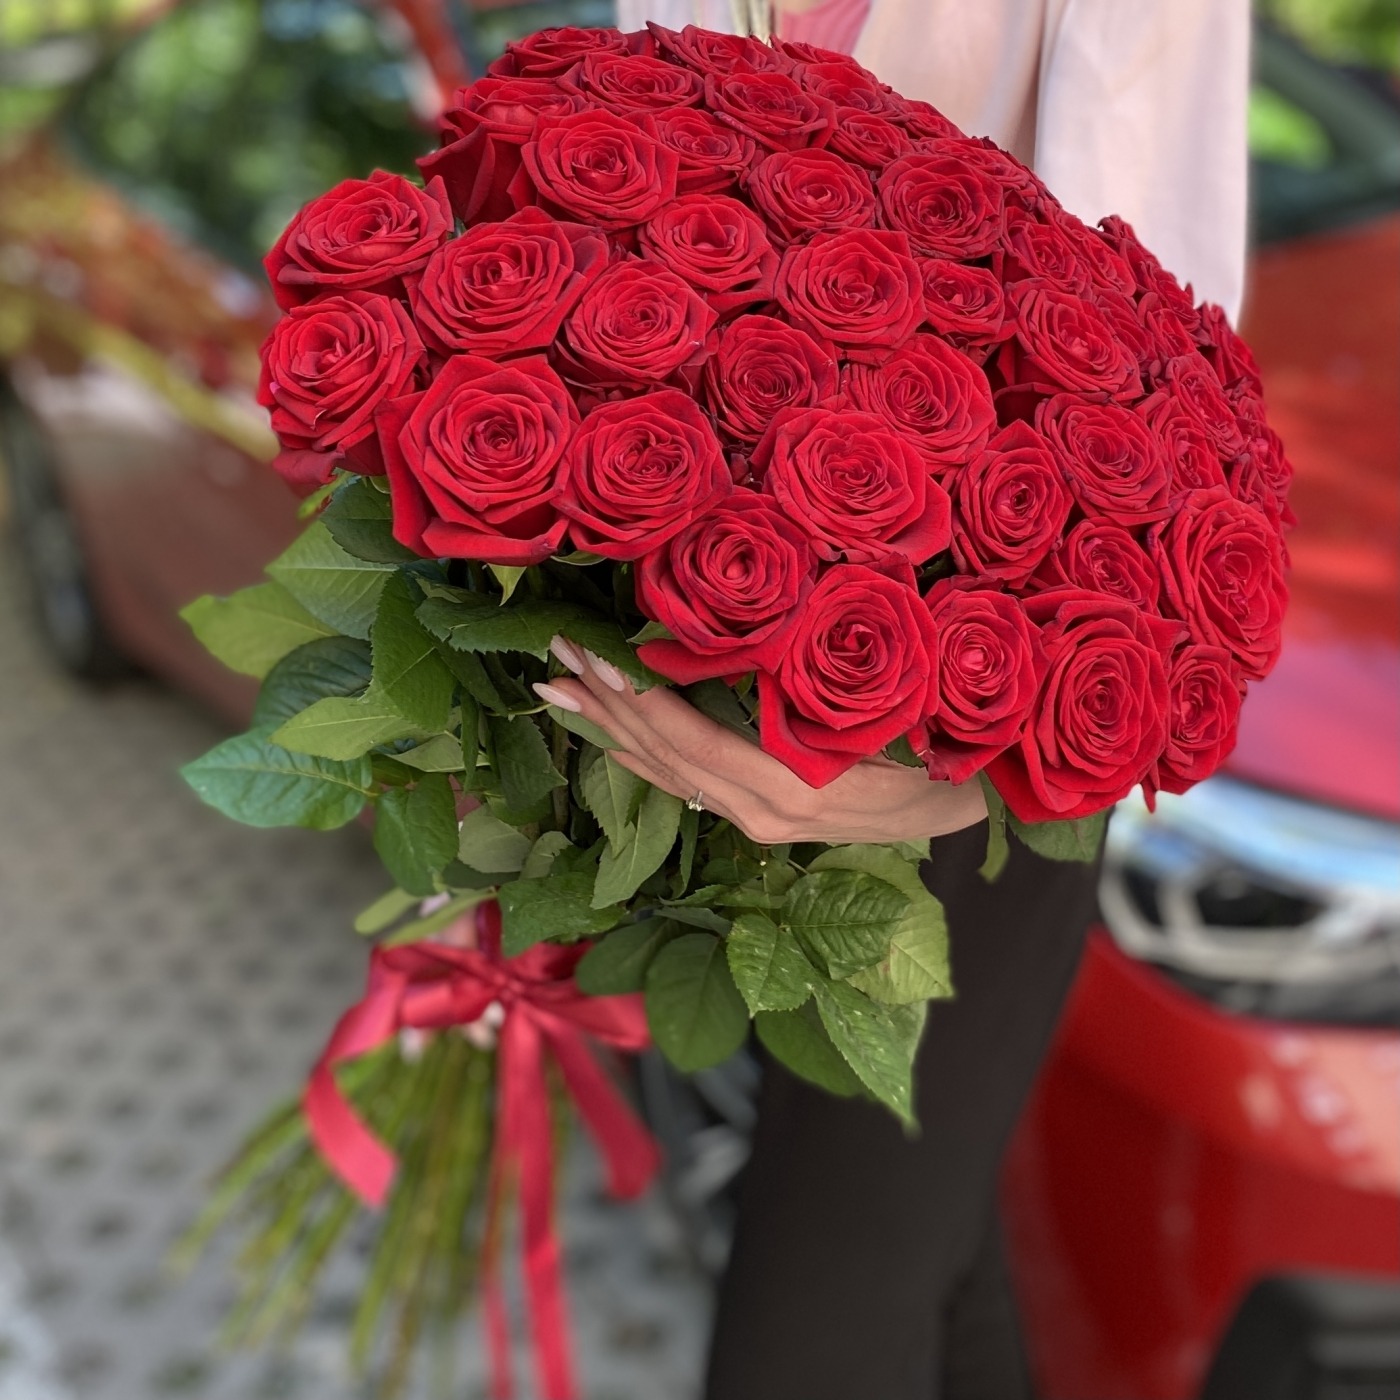 Купить букет 51 роза в москве недорого доставки некрасовка